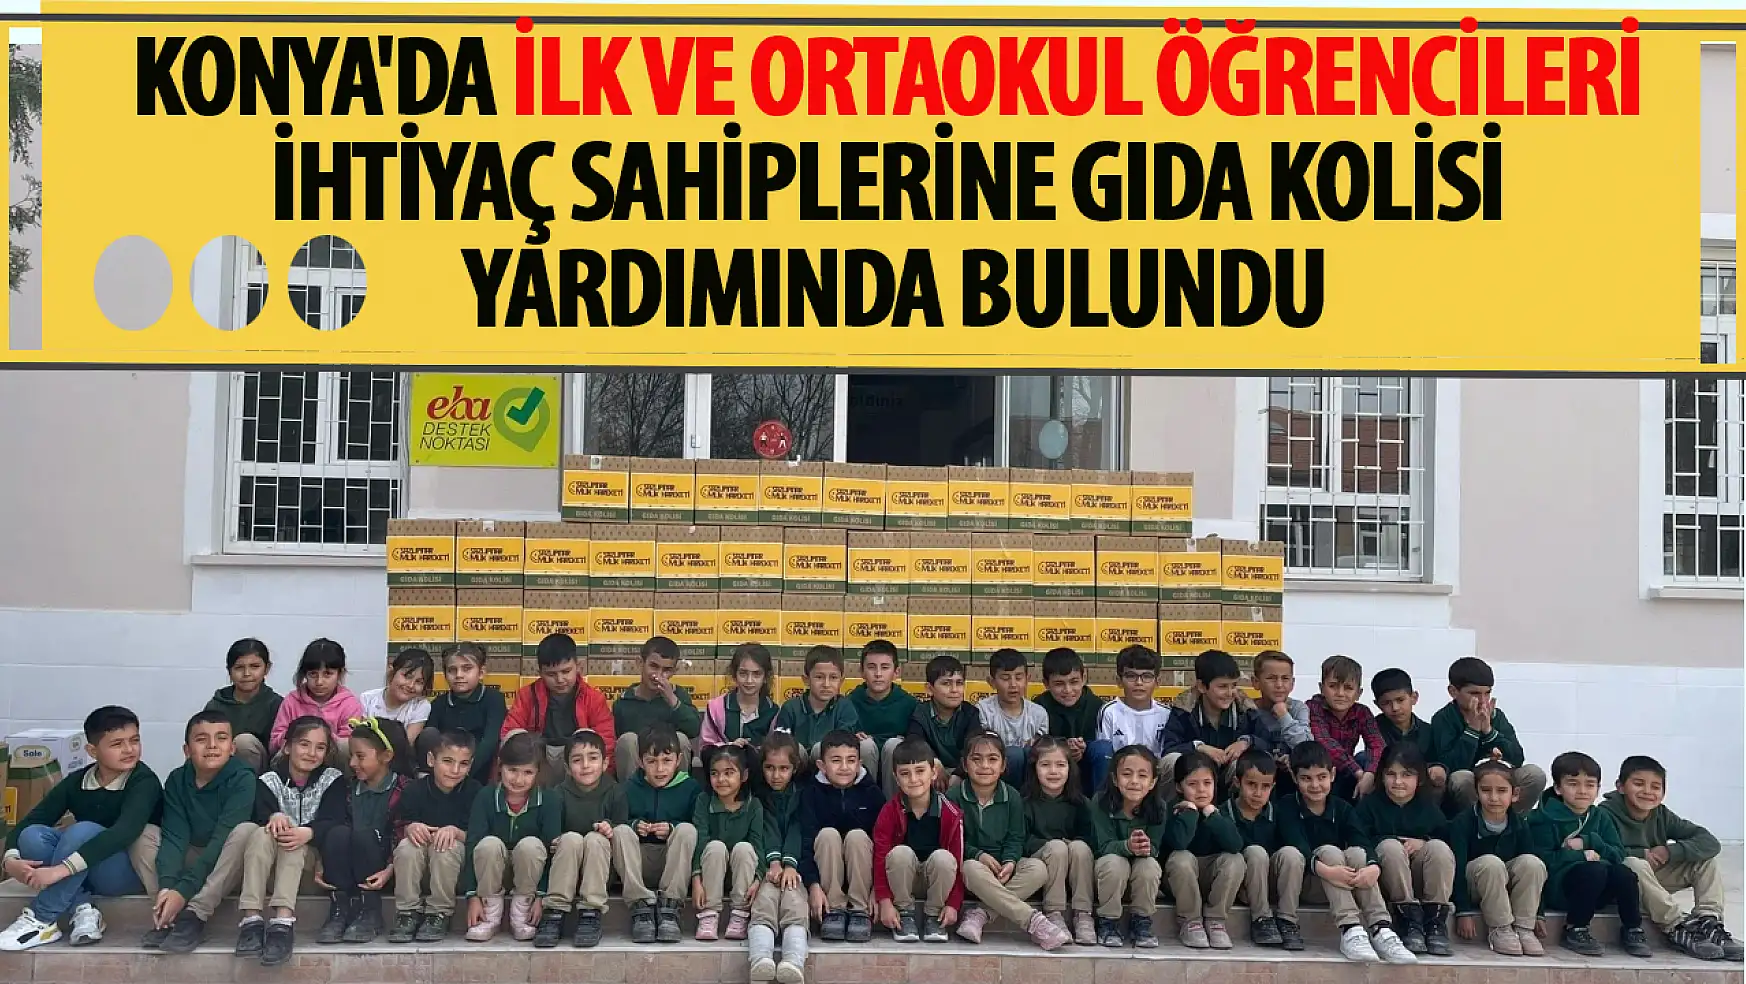 Konya'da İlk ve ortaokul öğrencileri ihtiyaç sahiplerine gıda kolisi yardımında bulundu